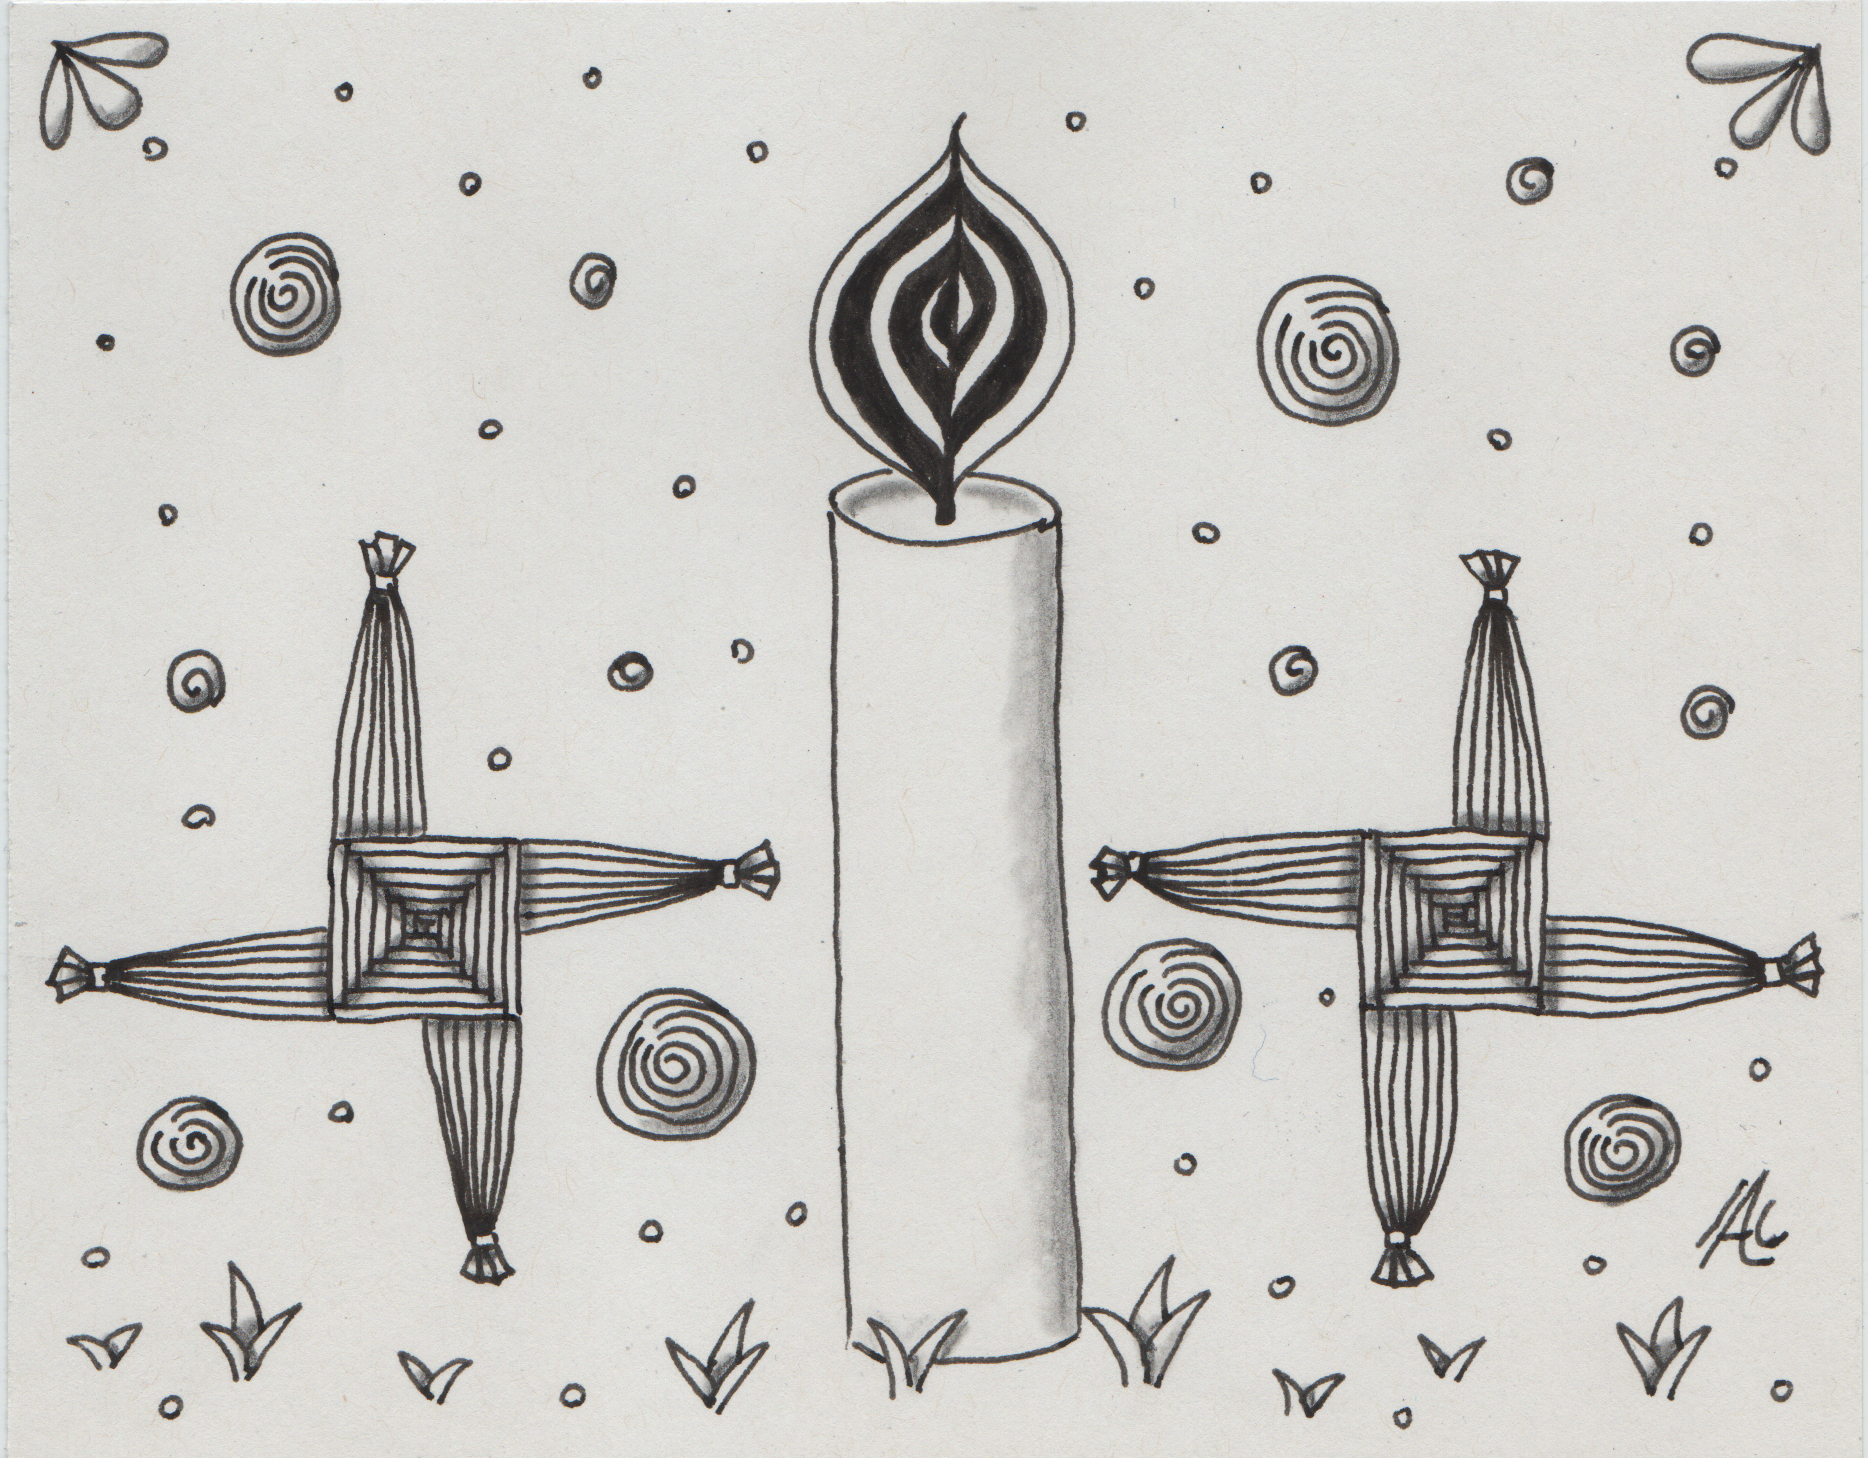 imbolc: schwarz weiße zeichnung von einer Kerze zwischen zwei Brighidkreuzen. Am unteren Bildrand schieben sich kleine Pflänzchen aus der Erde